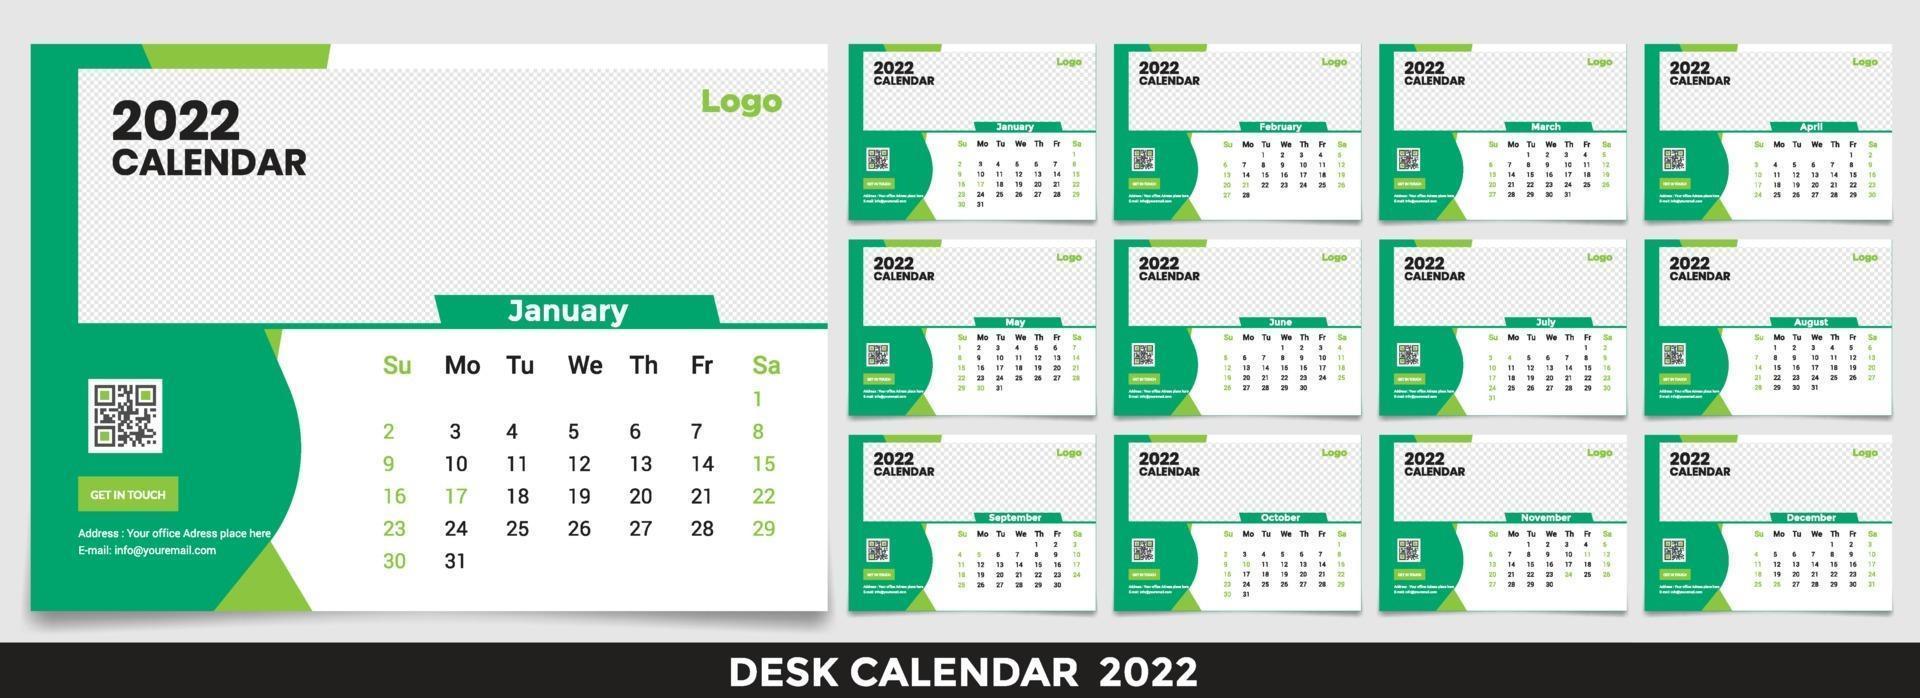 calendário 2022, definir design de modelo de calendário de mesa com lugar para foto e logotipo da empresa. a semana de segunda a domingo. conjunto de 12 meses vetor